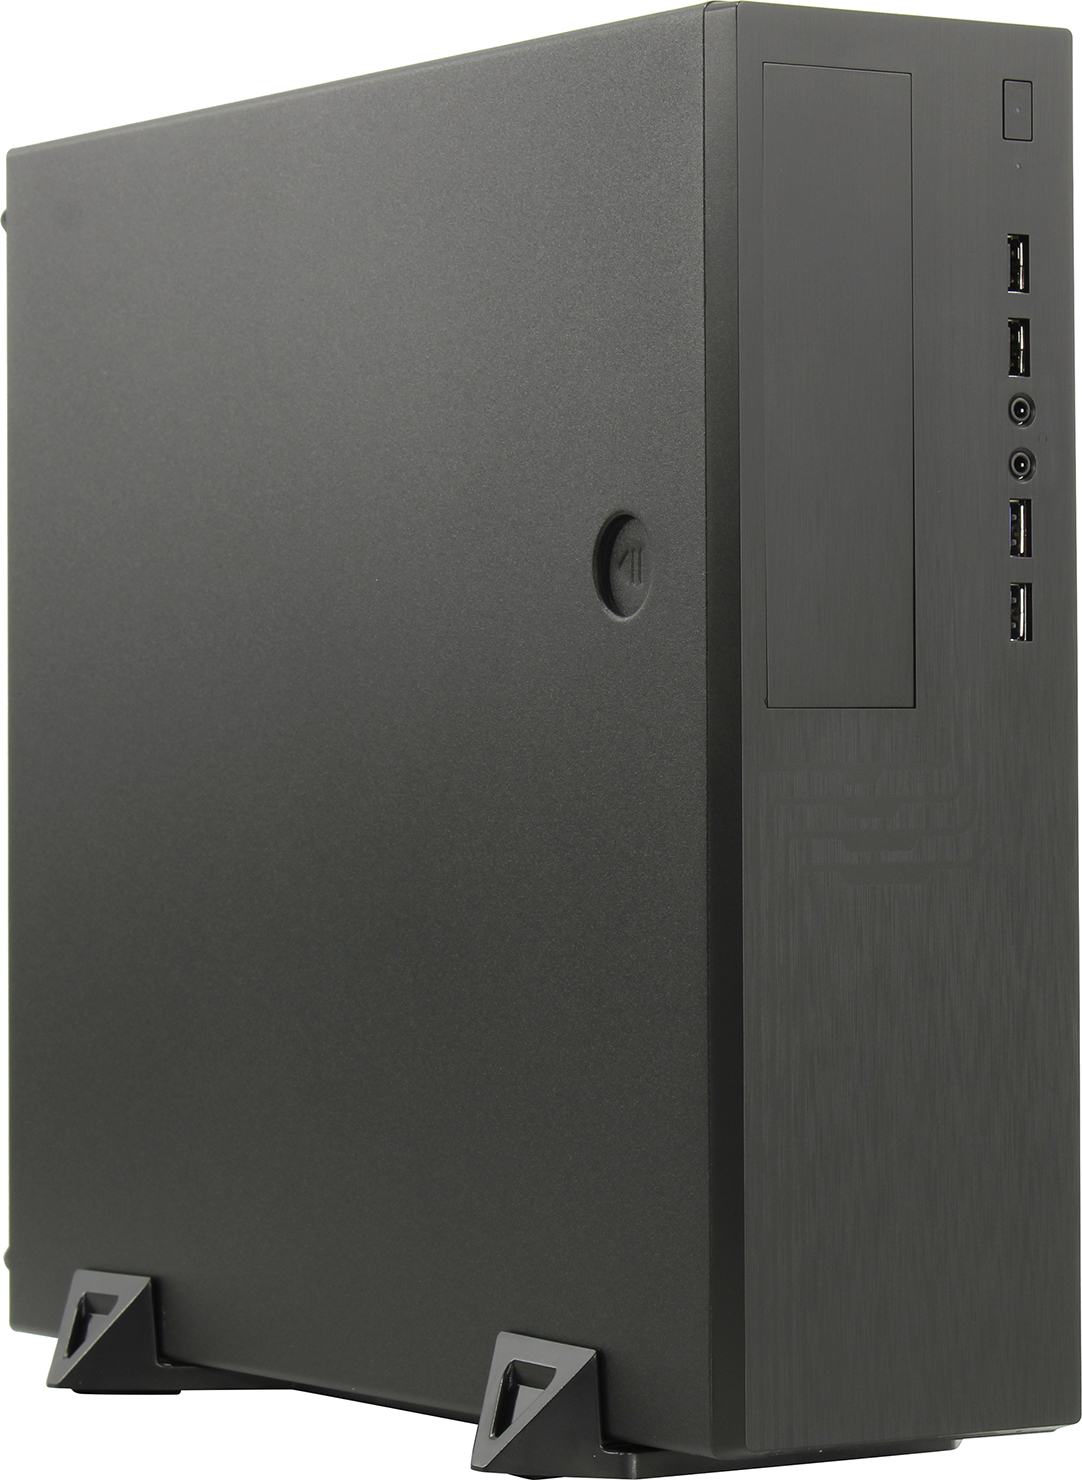 Корпус Powerman EL555, mATX, Slim-Desktop, 2xUSB 3.0, черный, 300 Вт (6141876)